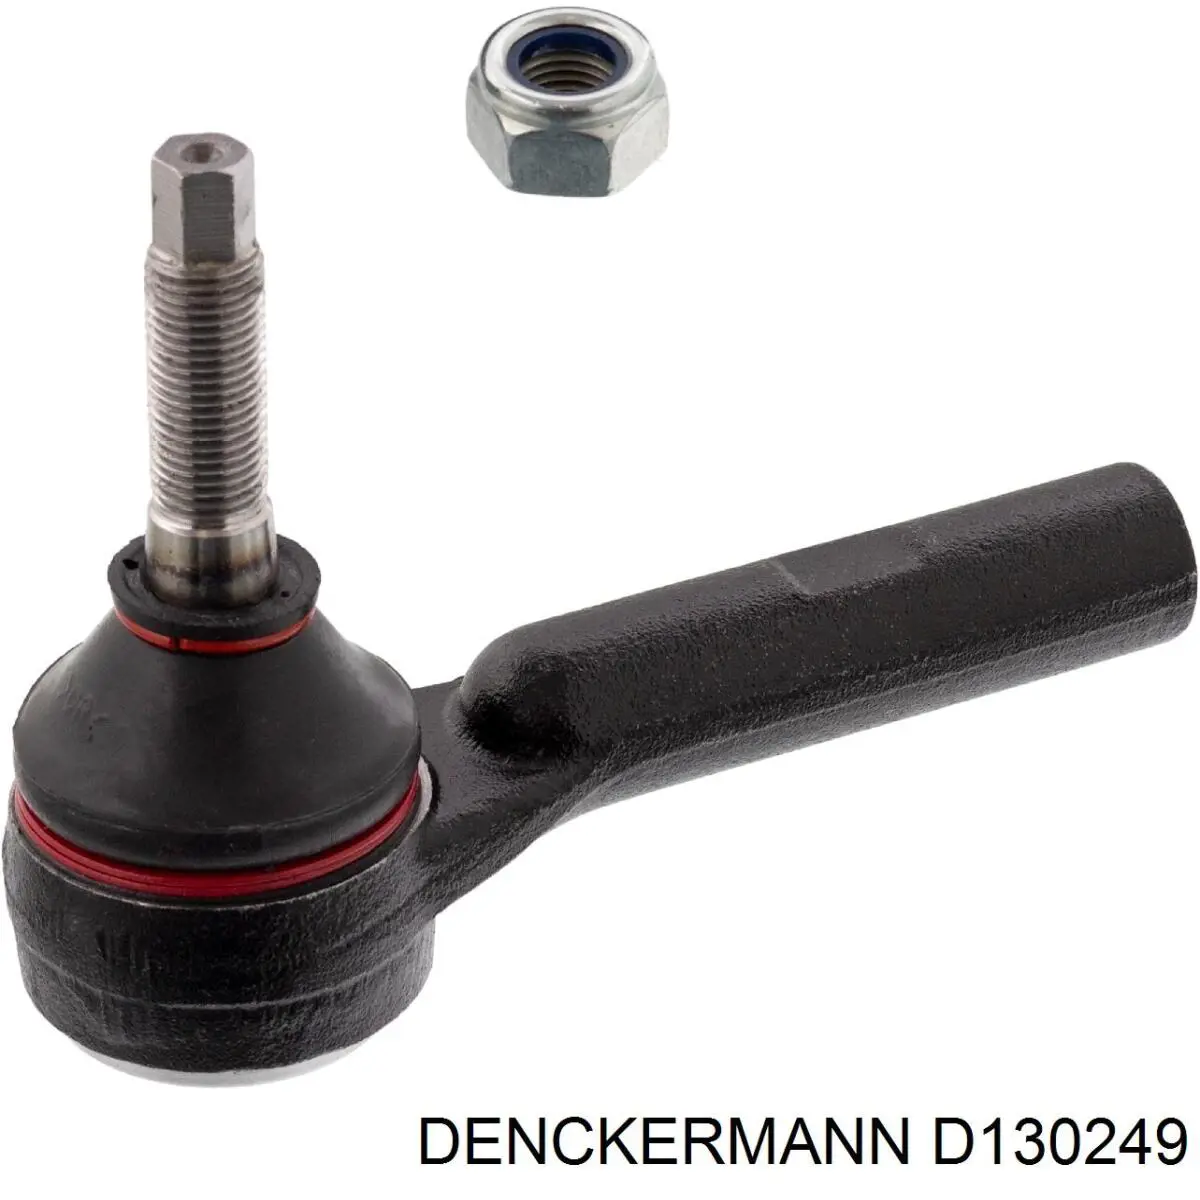 D130249 Denckermann rótula barra de acoplamiento exterior